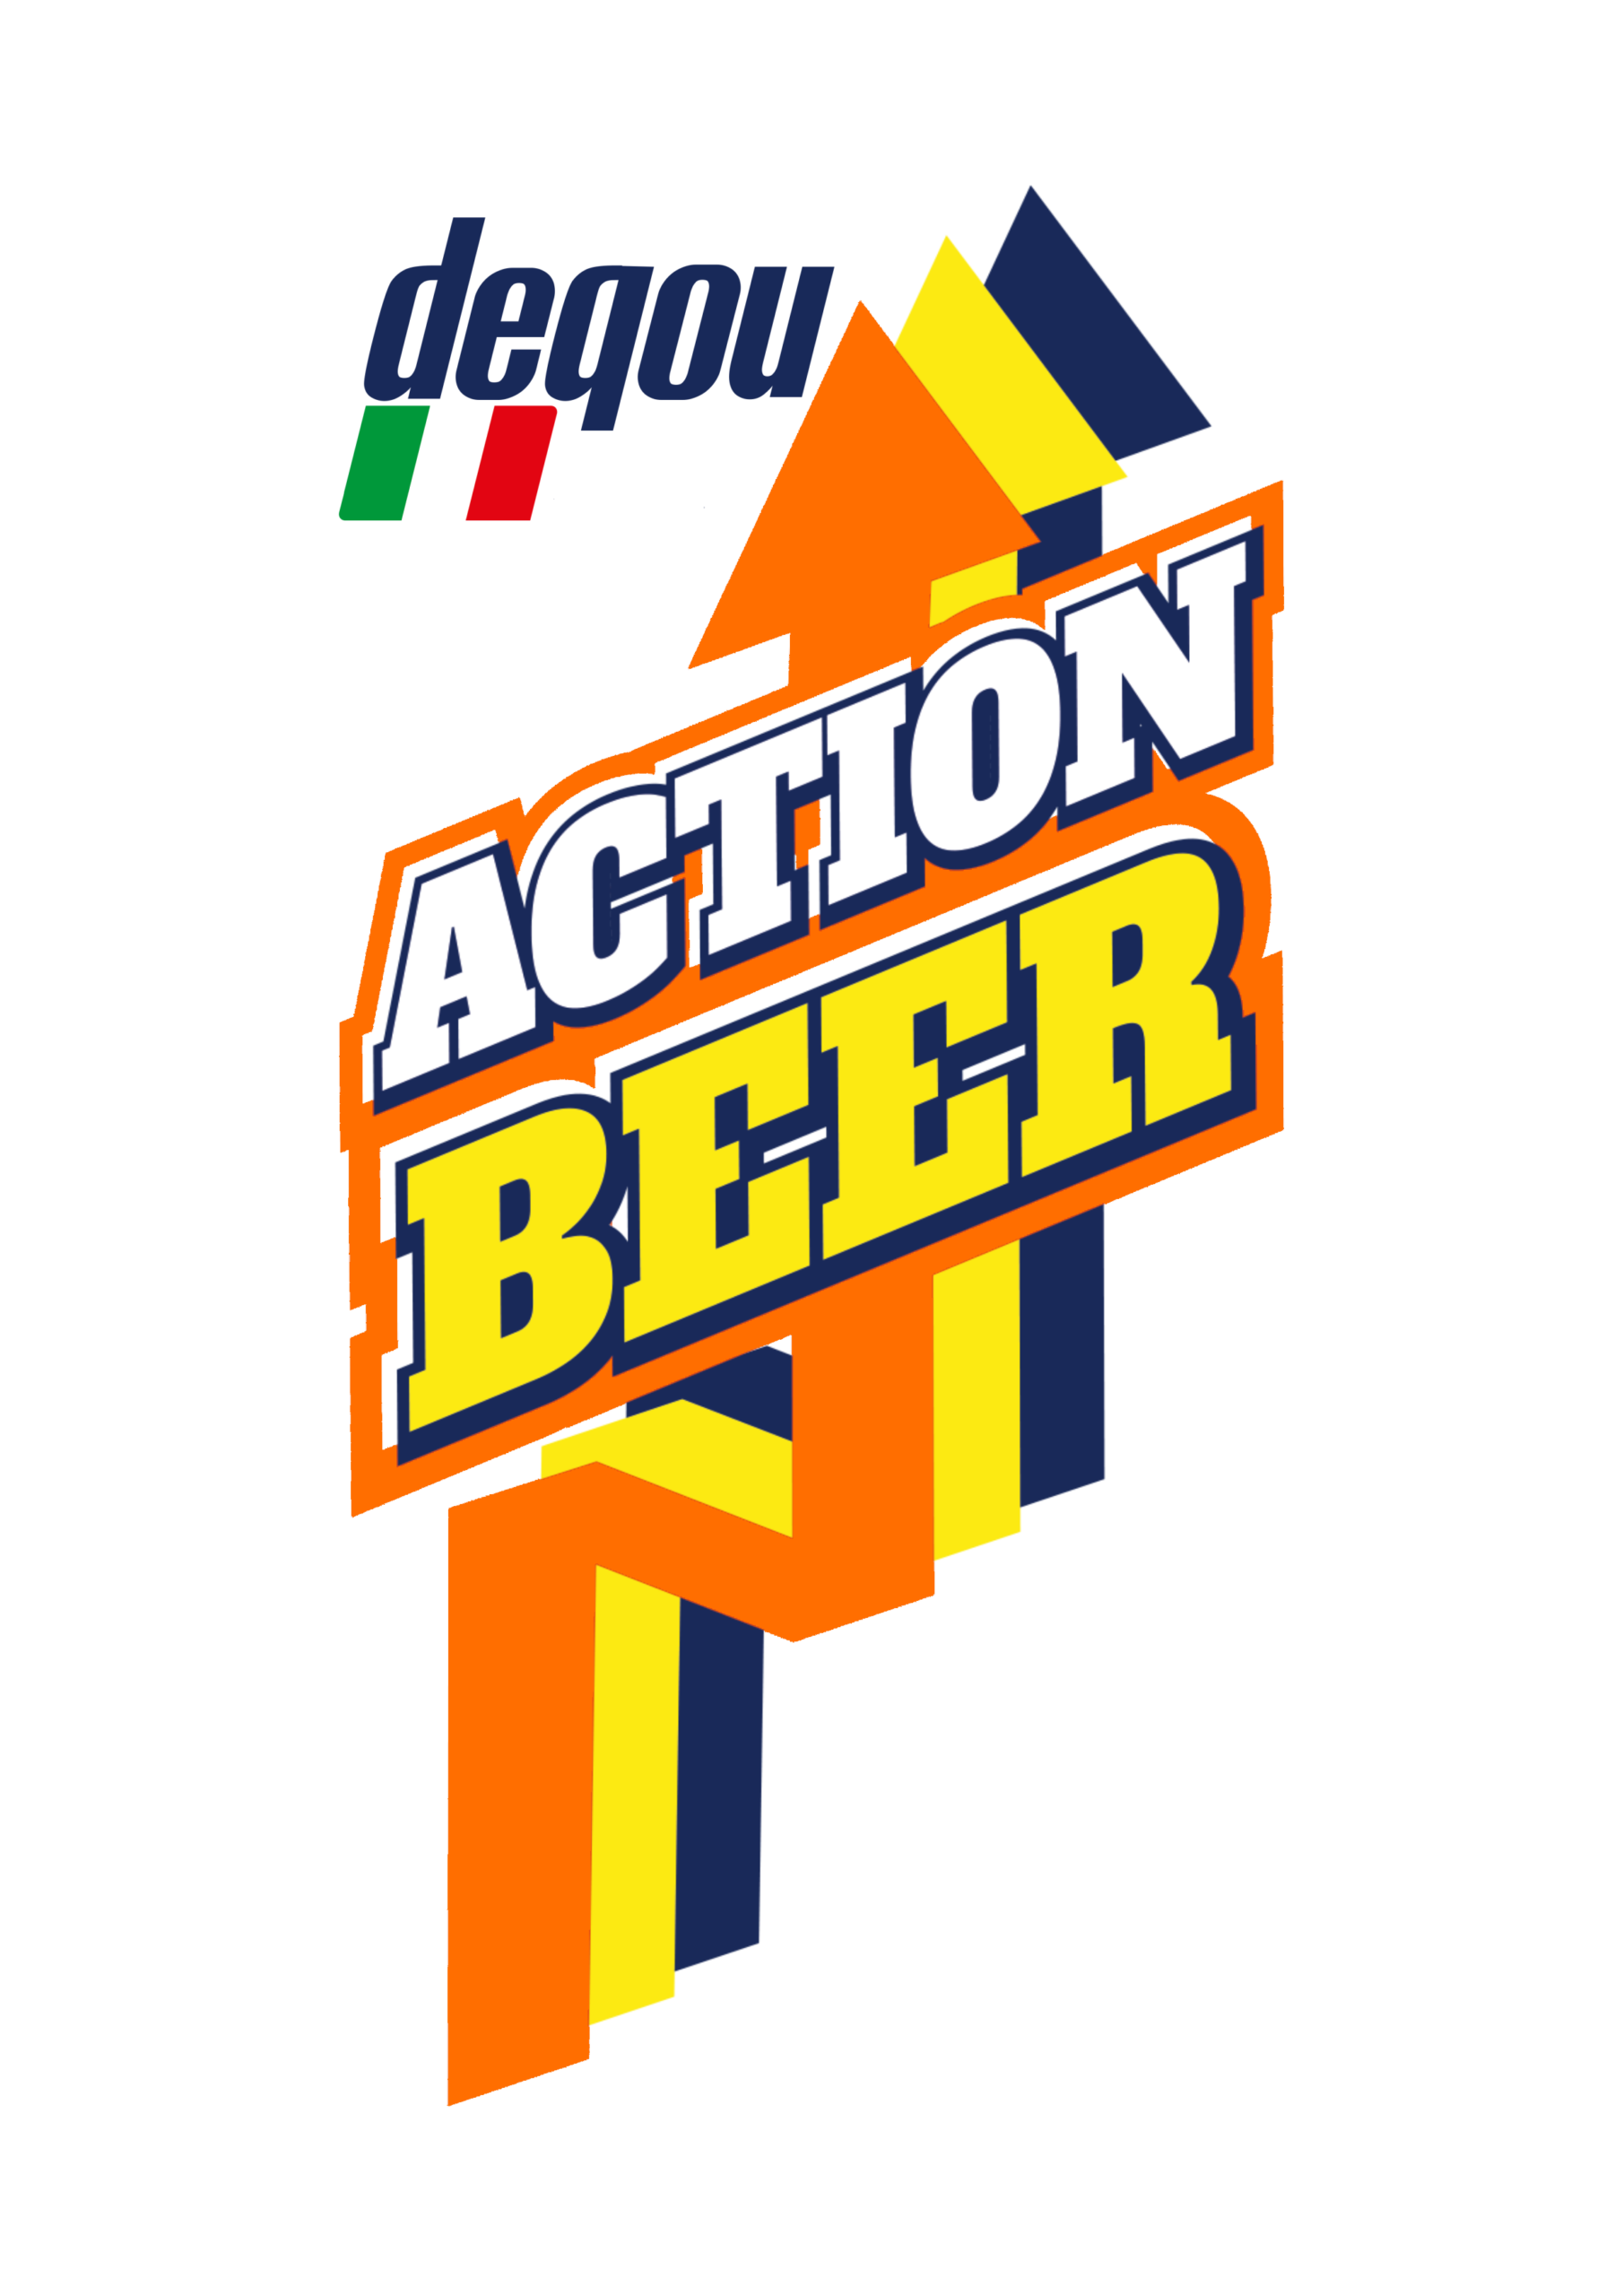 Maak een sneeuwpop Wijde selectie bewaker DeQou Action Beer, finalmente!